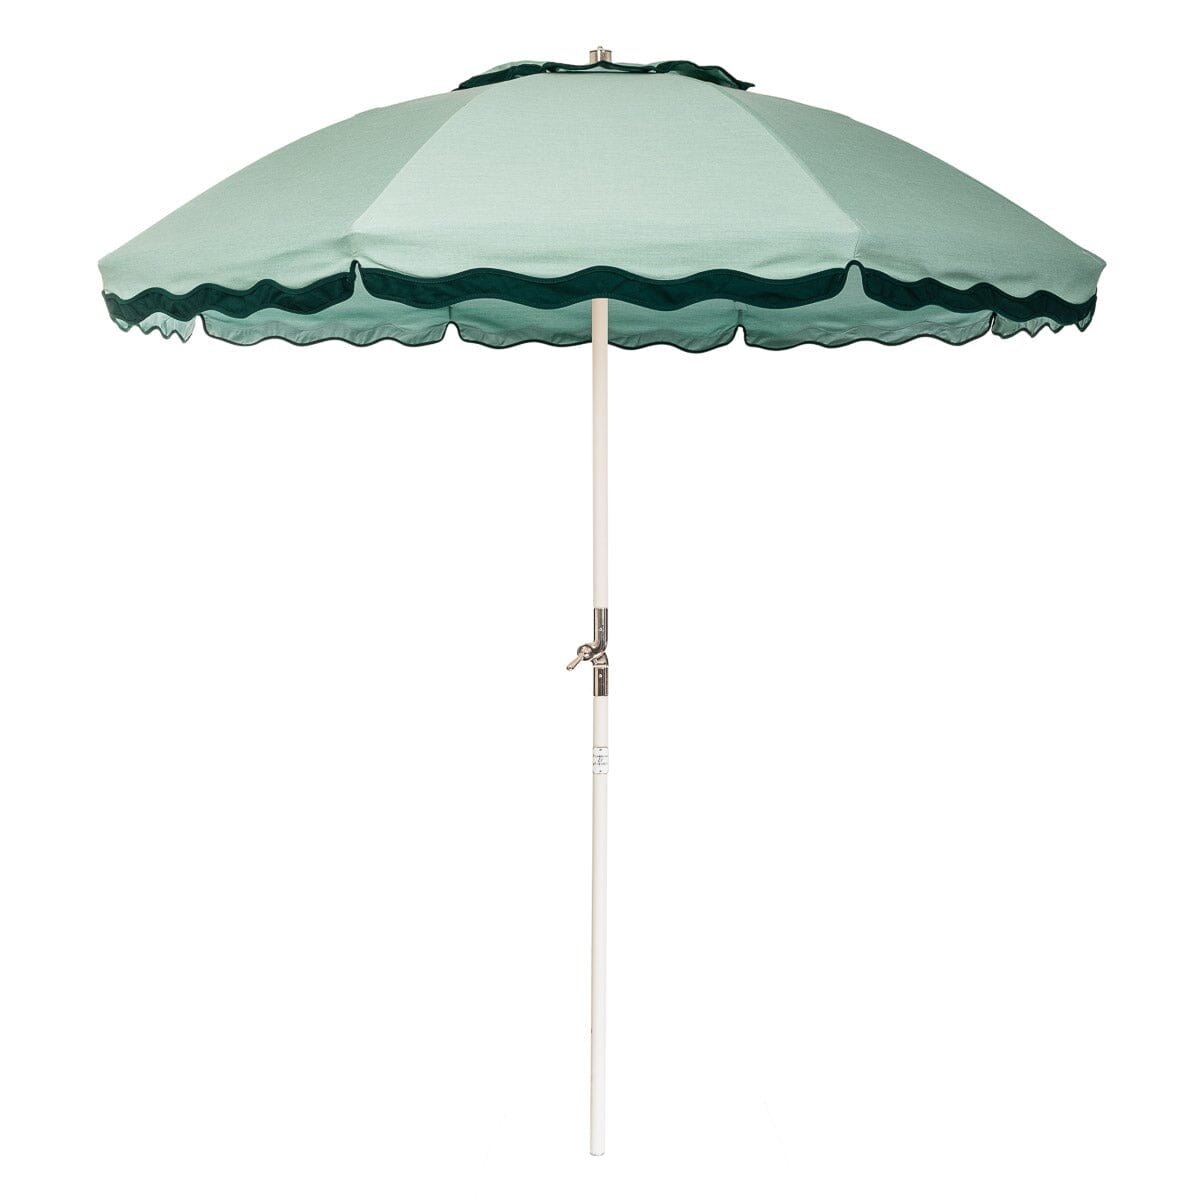 The Club Umbrella - Rivie Green Club Umbrella Business & Pleasure Co. 